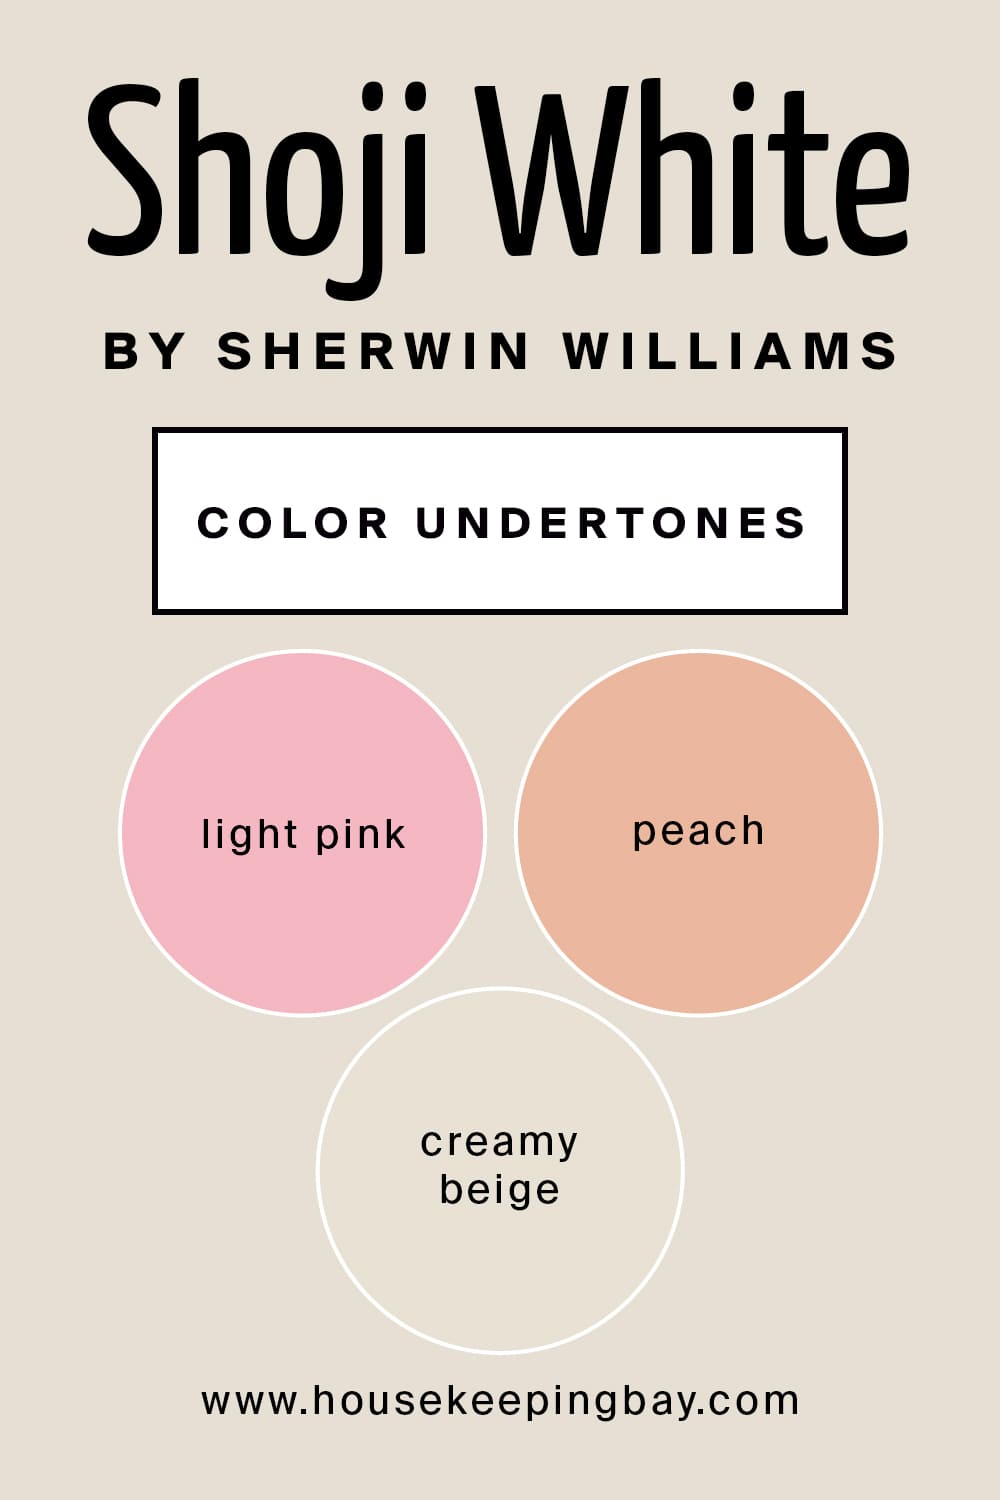 Shoji White by Sherwin Williams Color Undertones